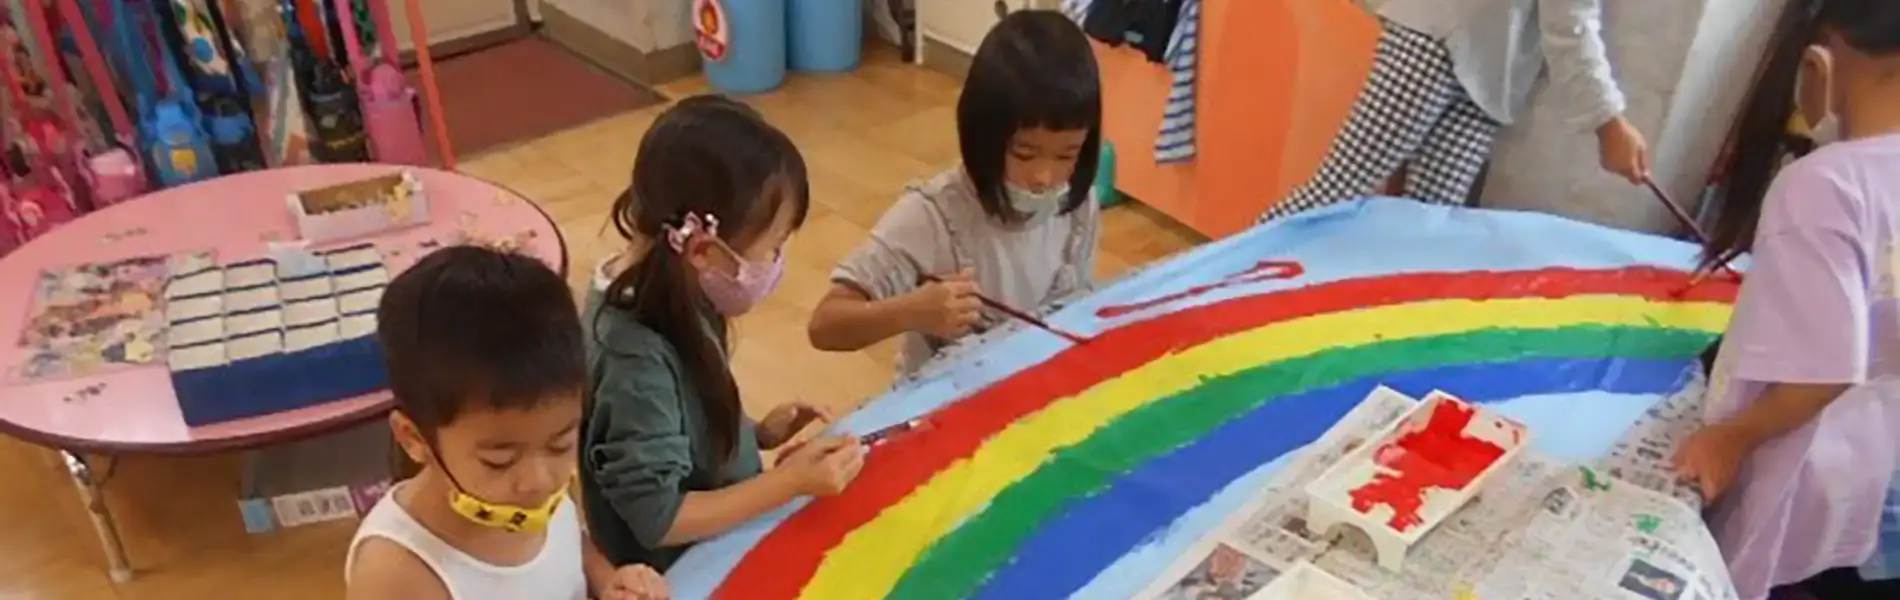 虹の絵を描く子供たち